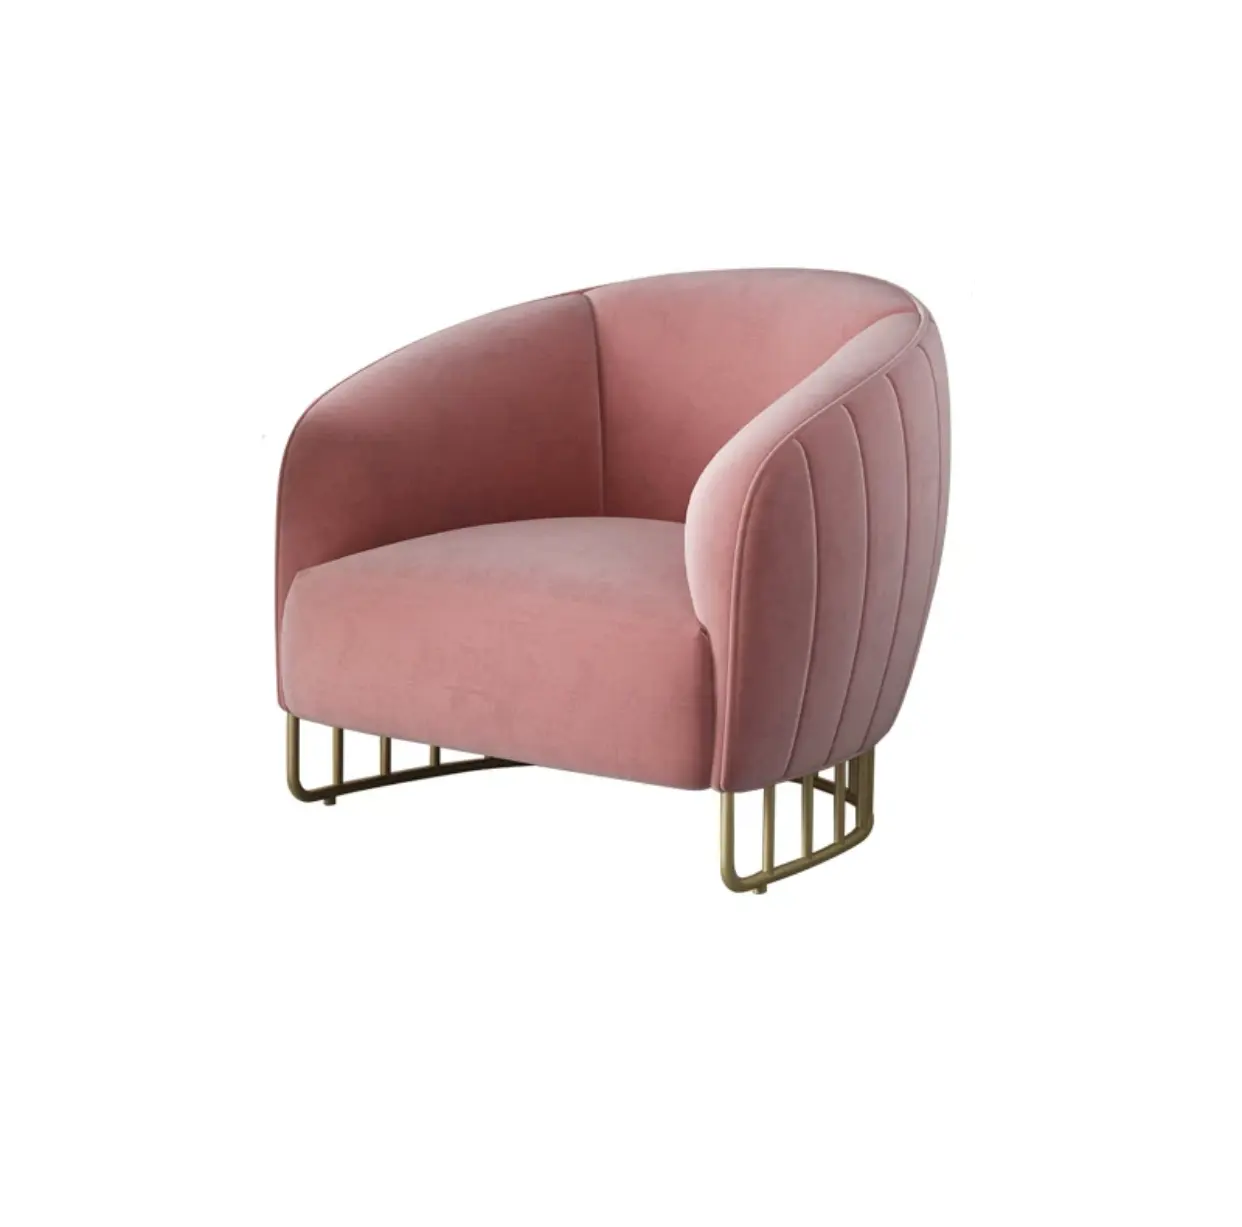 เก้าอี้รับประทานอาหารที่ทันสมัยเก้าอี้สำหรับห้องนั่งเล่นผ้าโลหะสีทองหุ้มโซฟาเดี่ยว